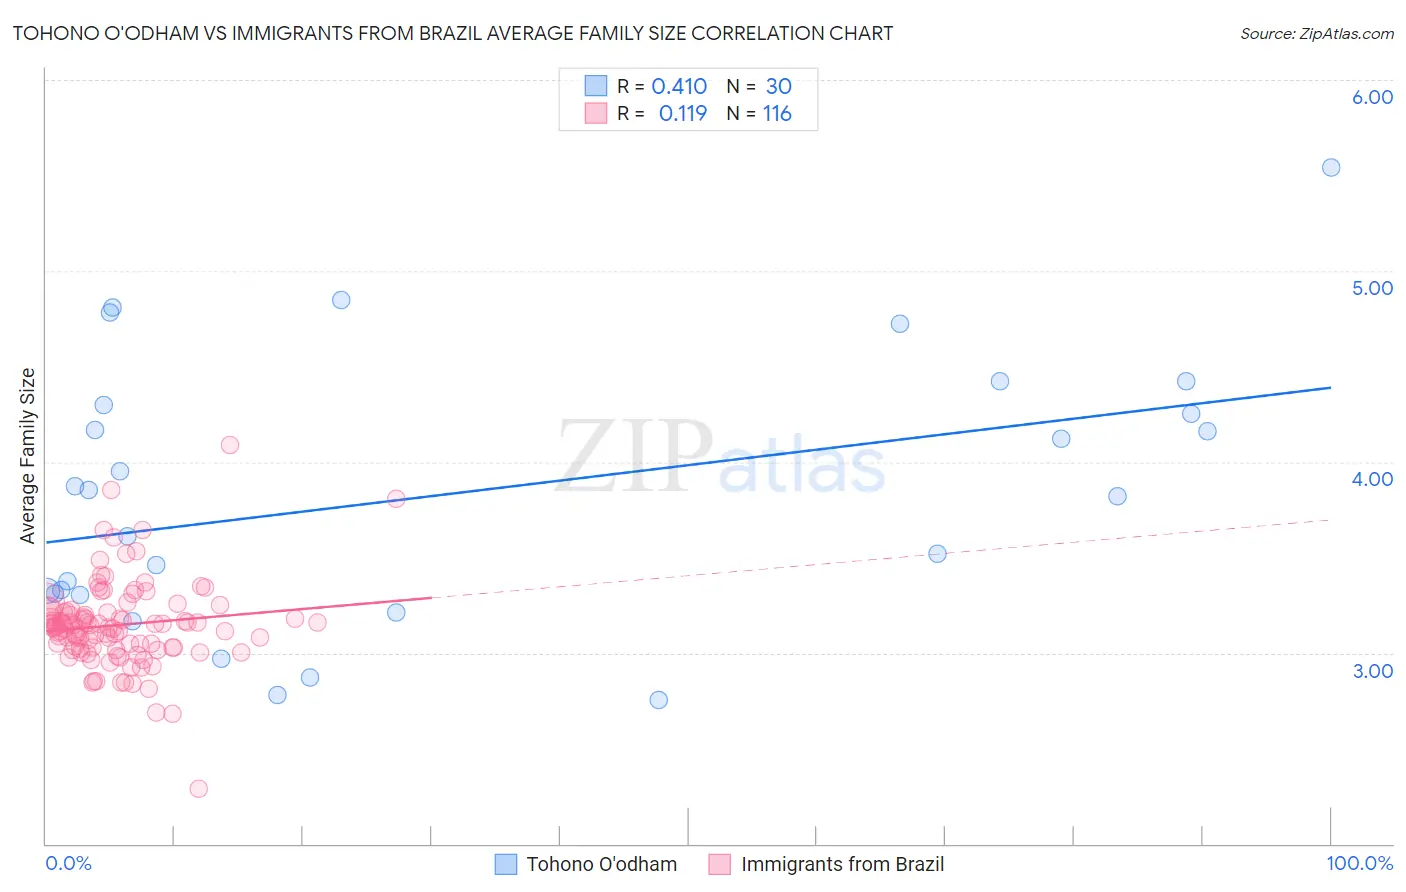 Tohono O'odham vs Immigrants from Brazil Average Family Size